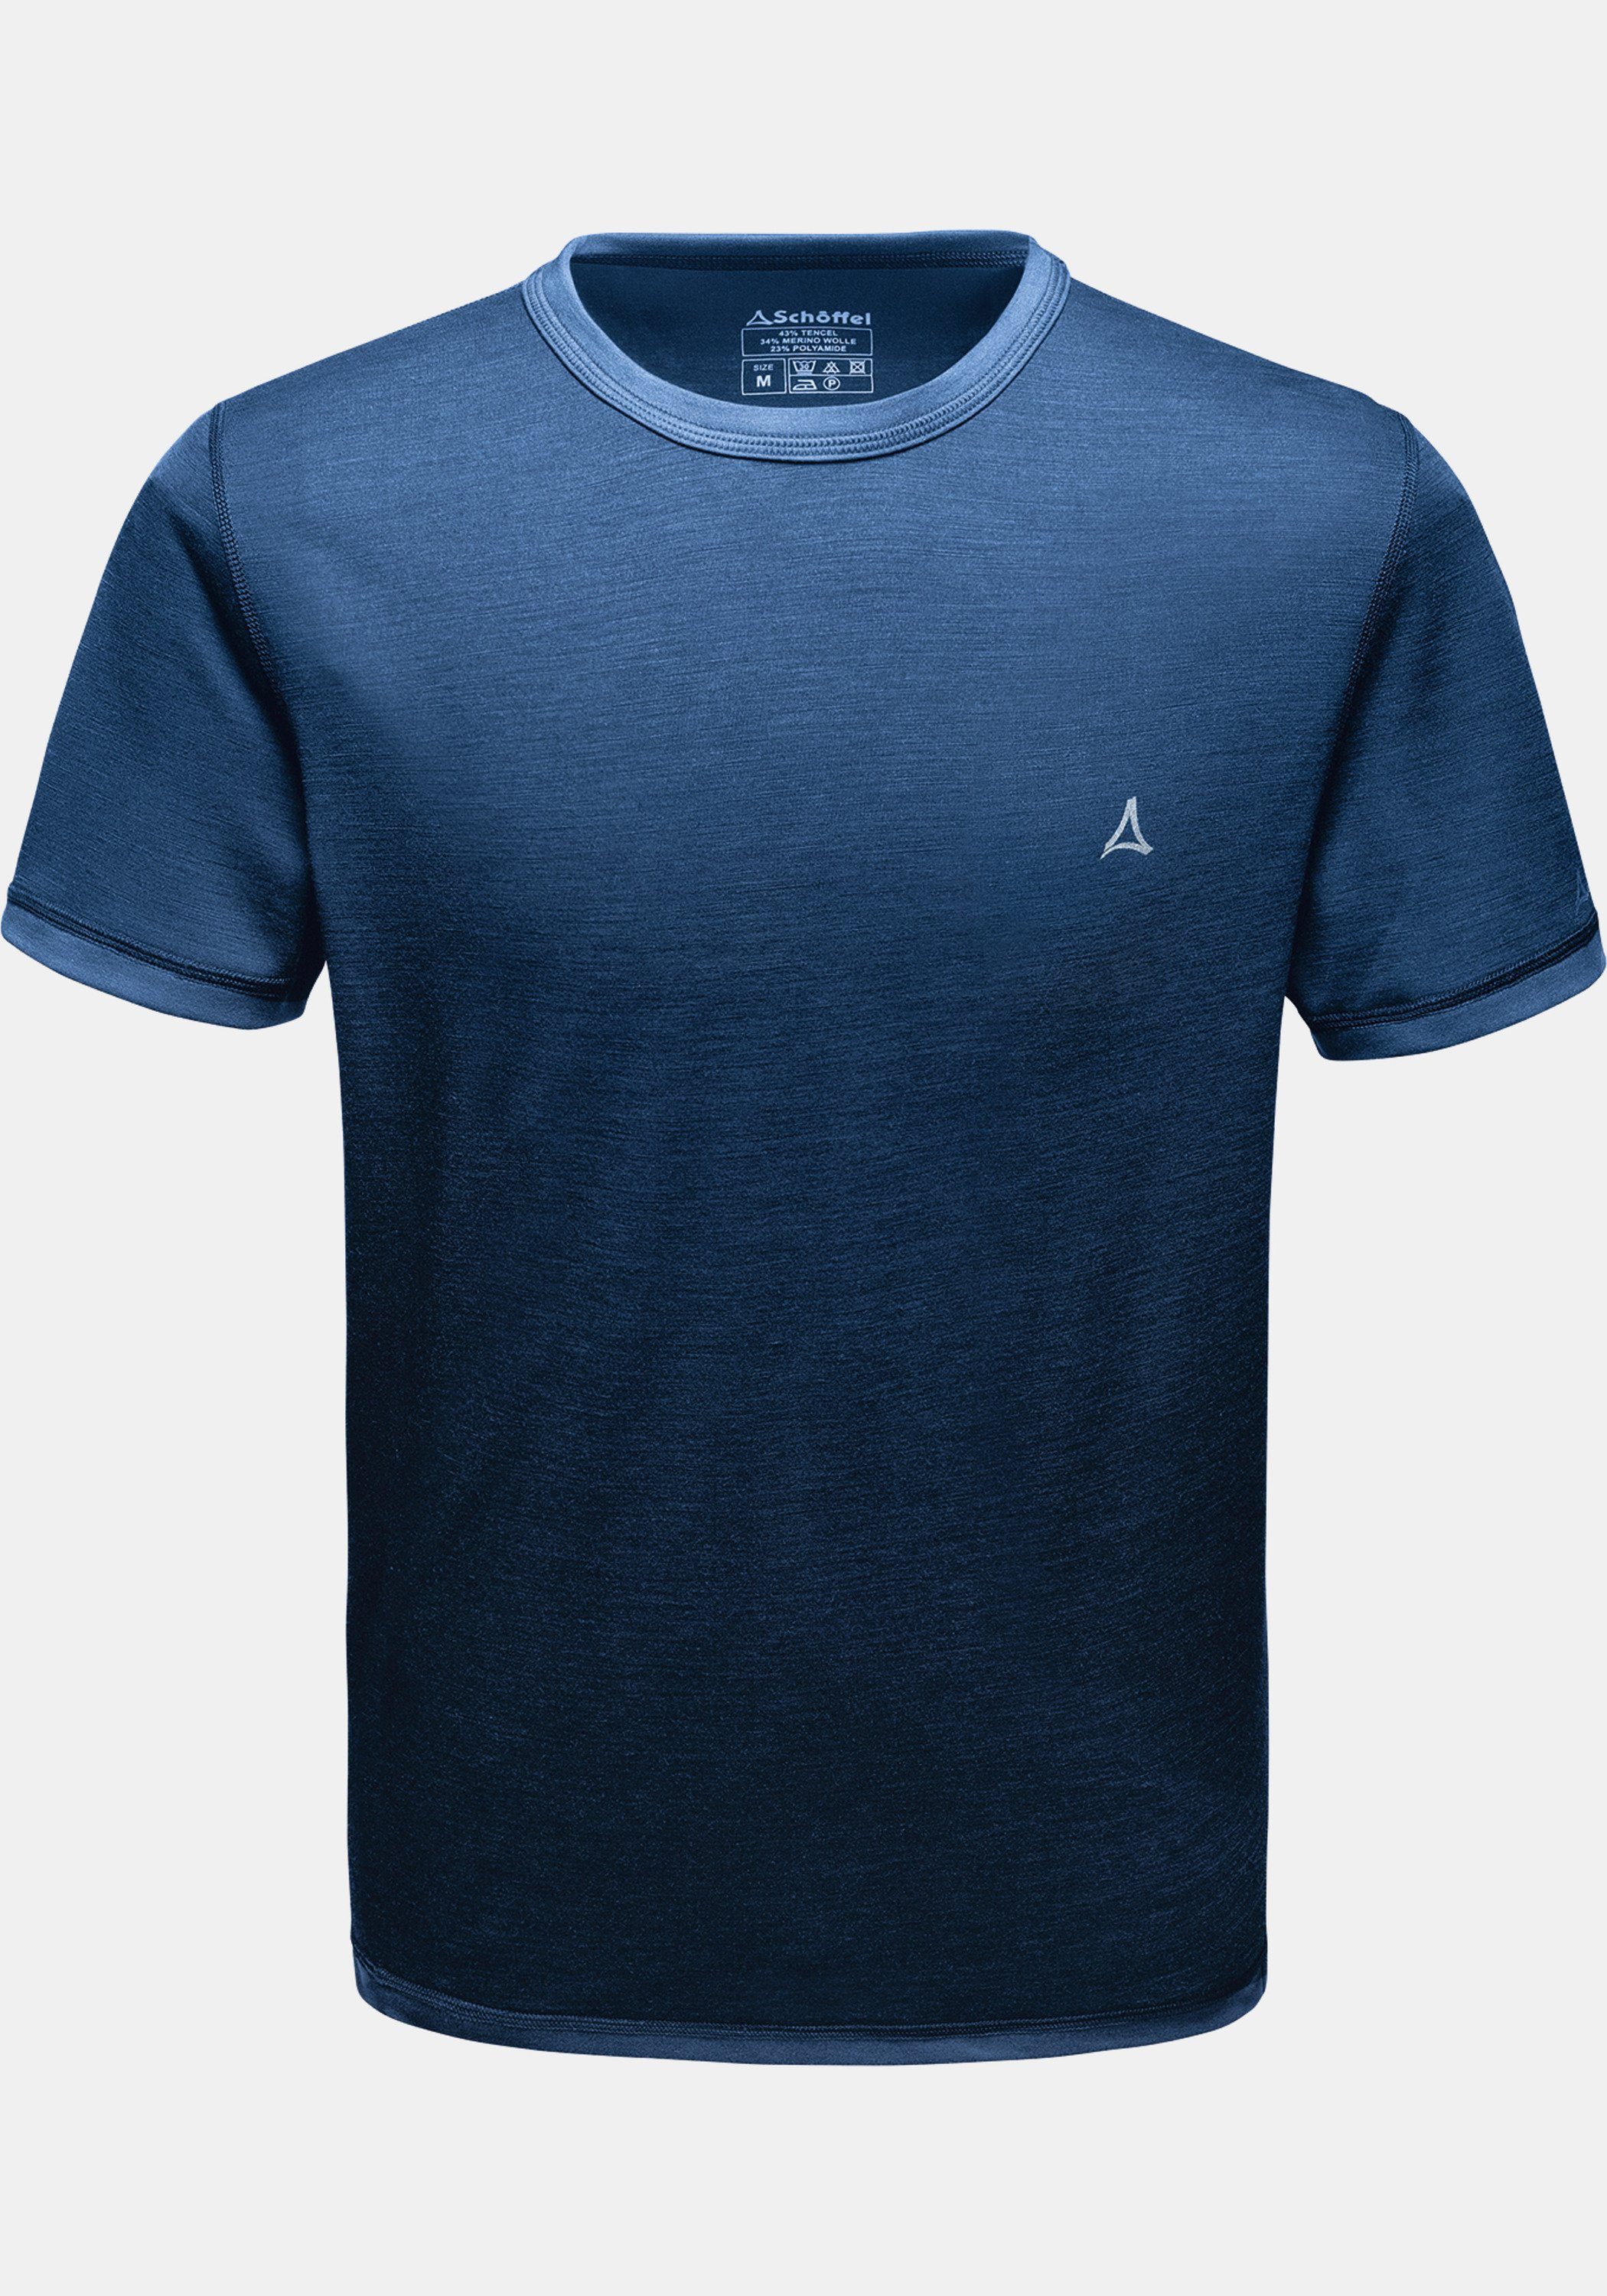 blau Shirt M Arm 1/2 Schöffel Sport Funktionsshirt Merino